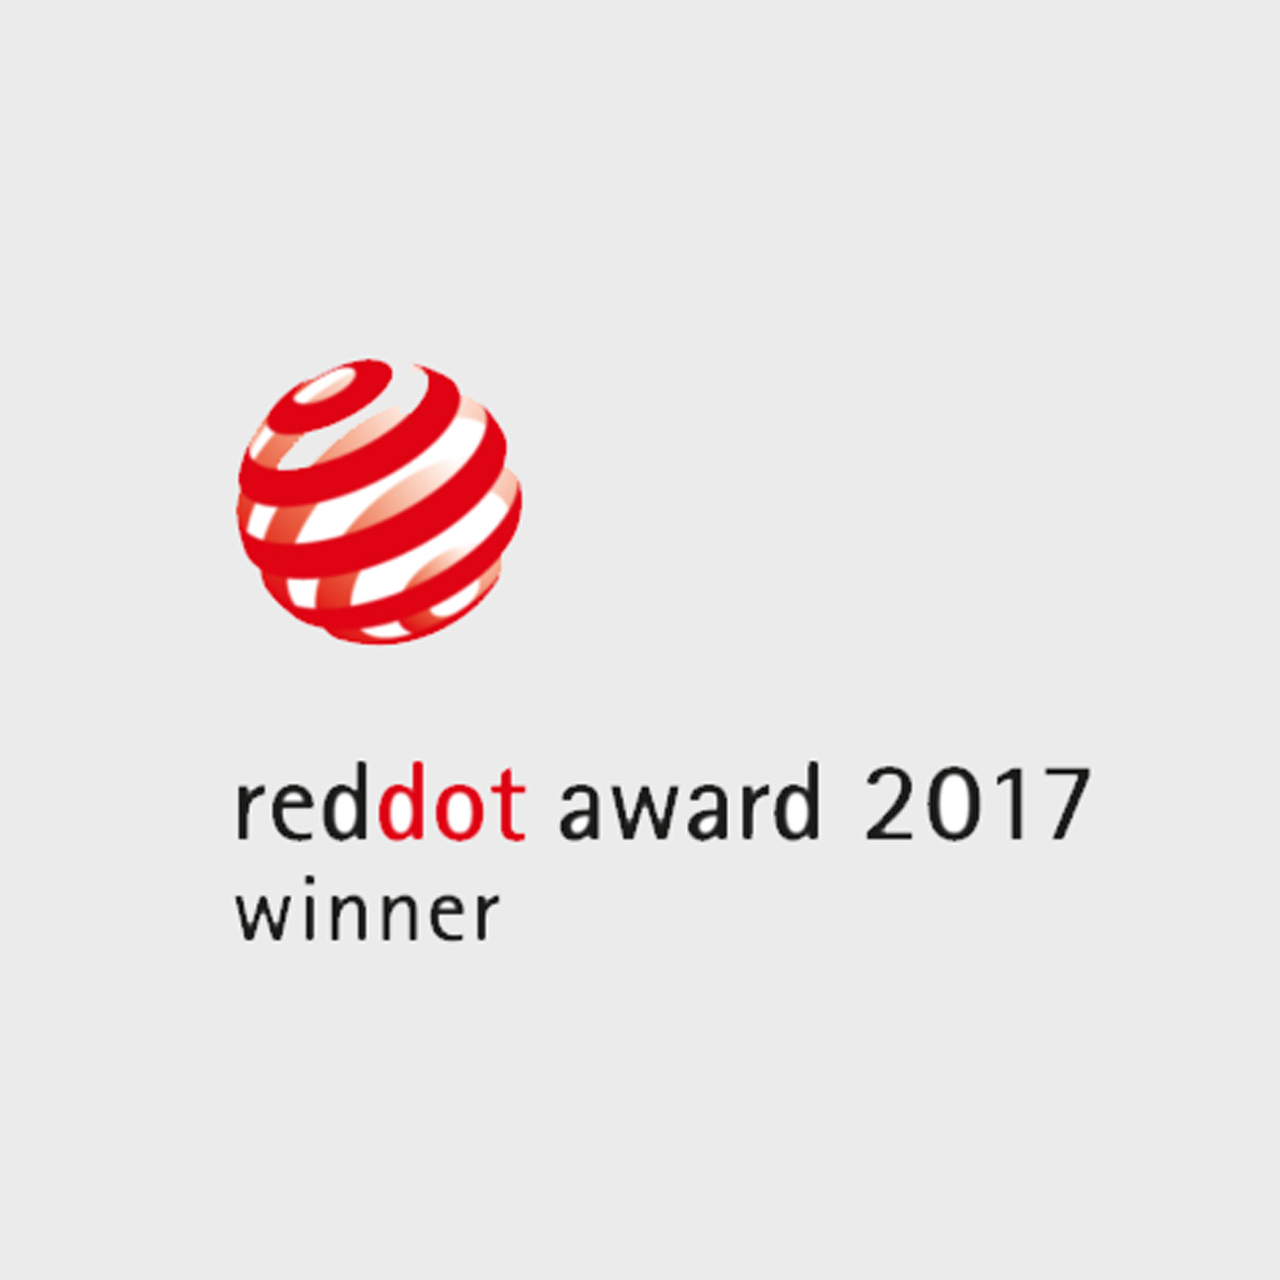 reddot2017.jpg